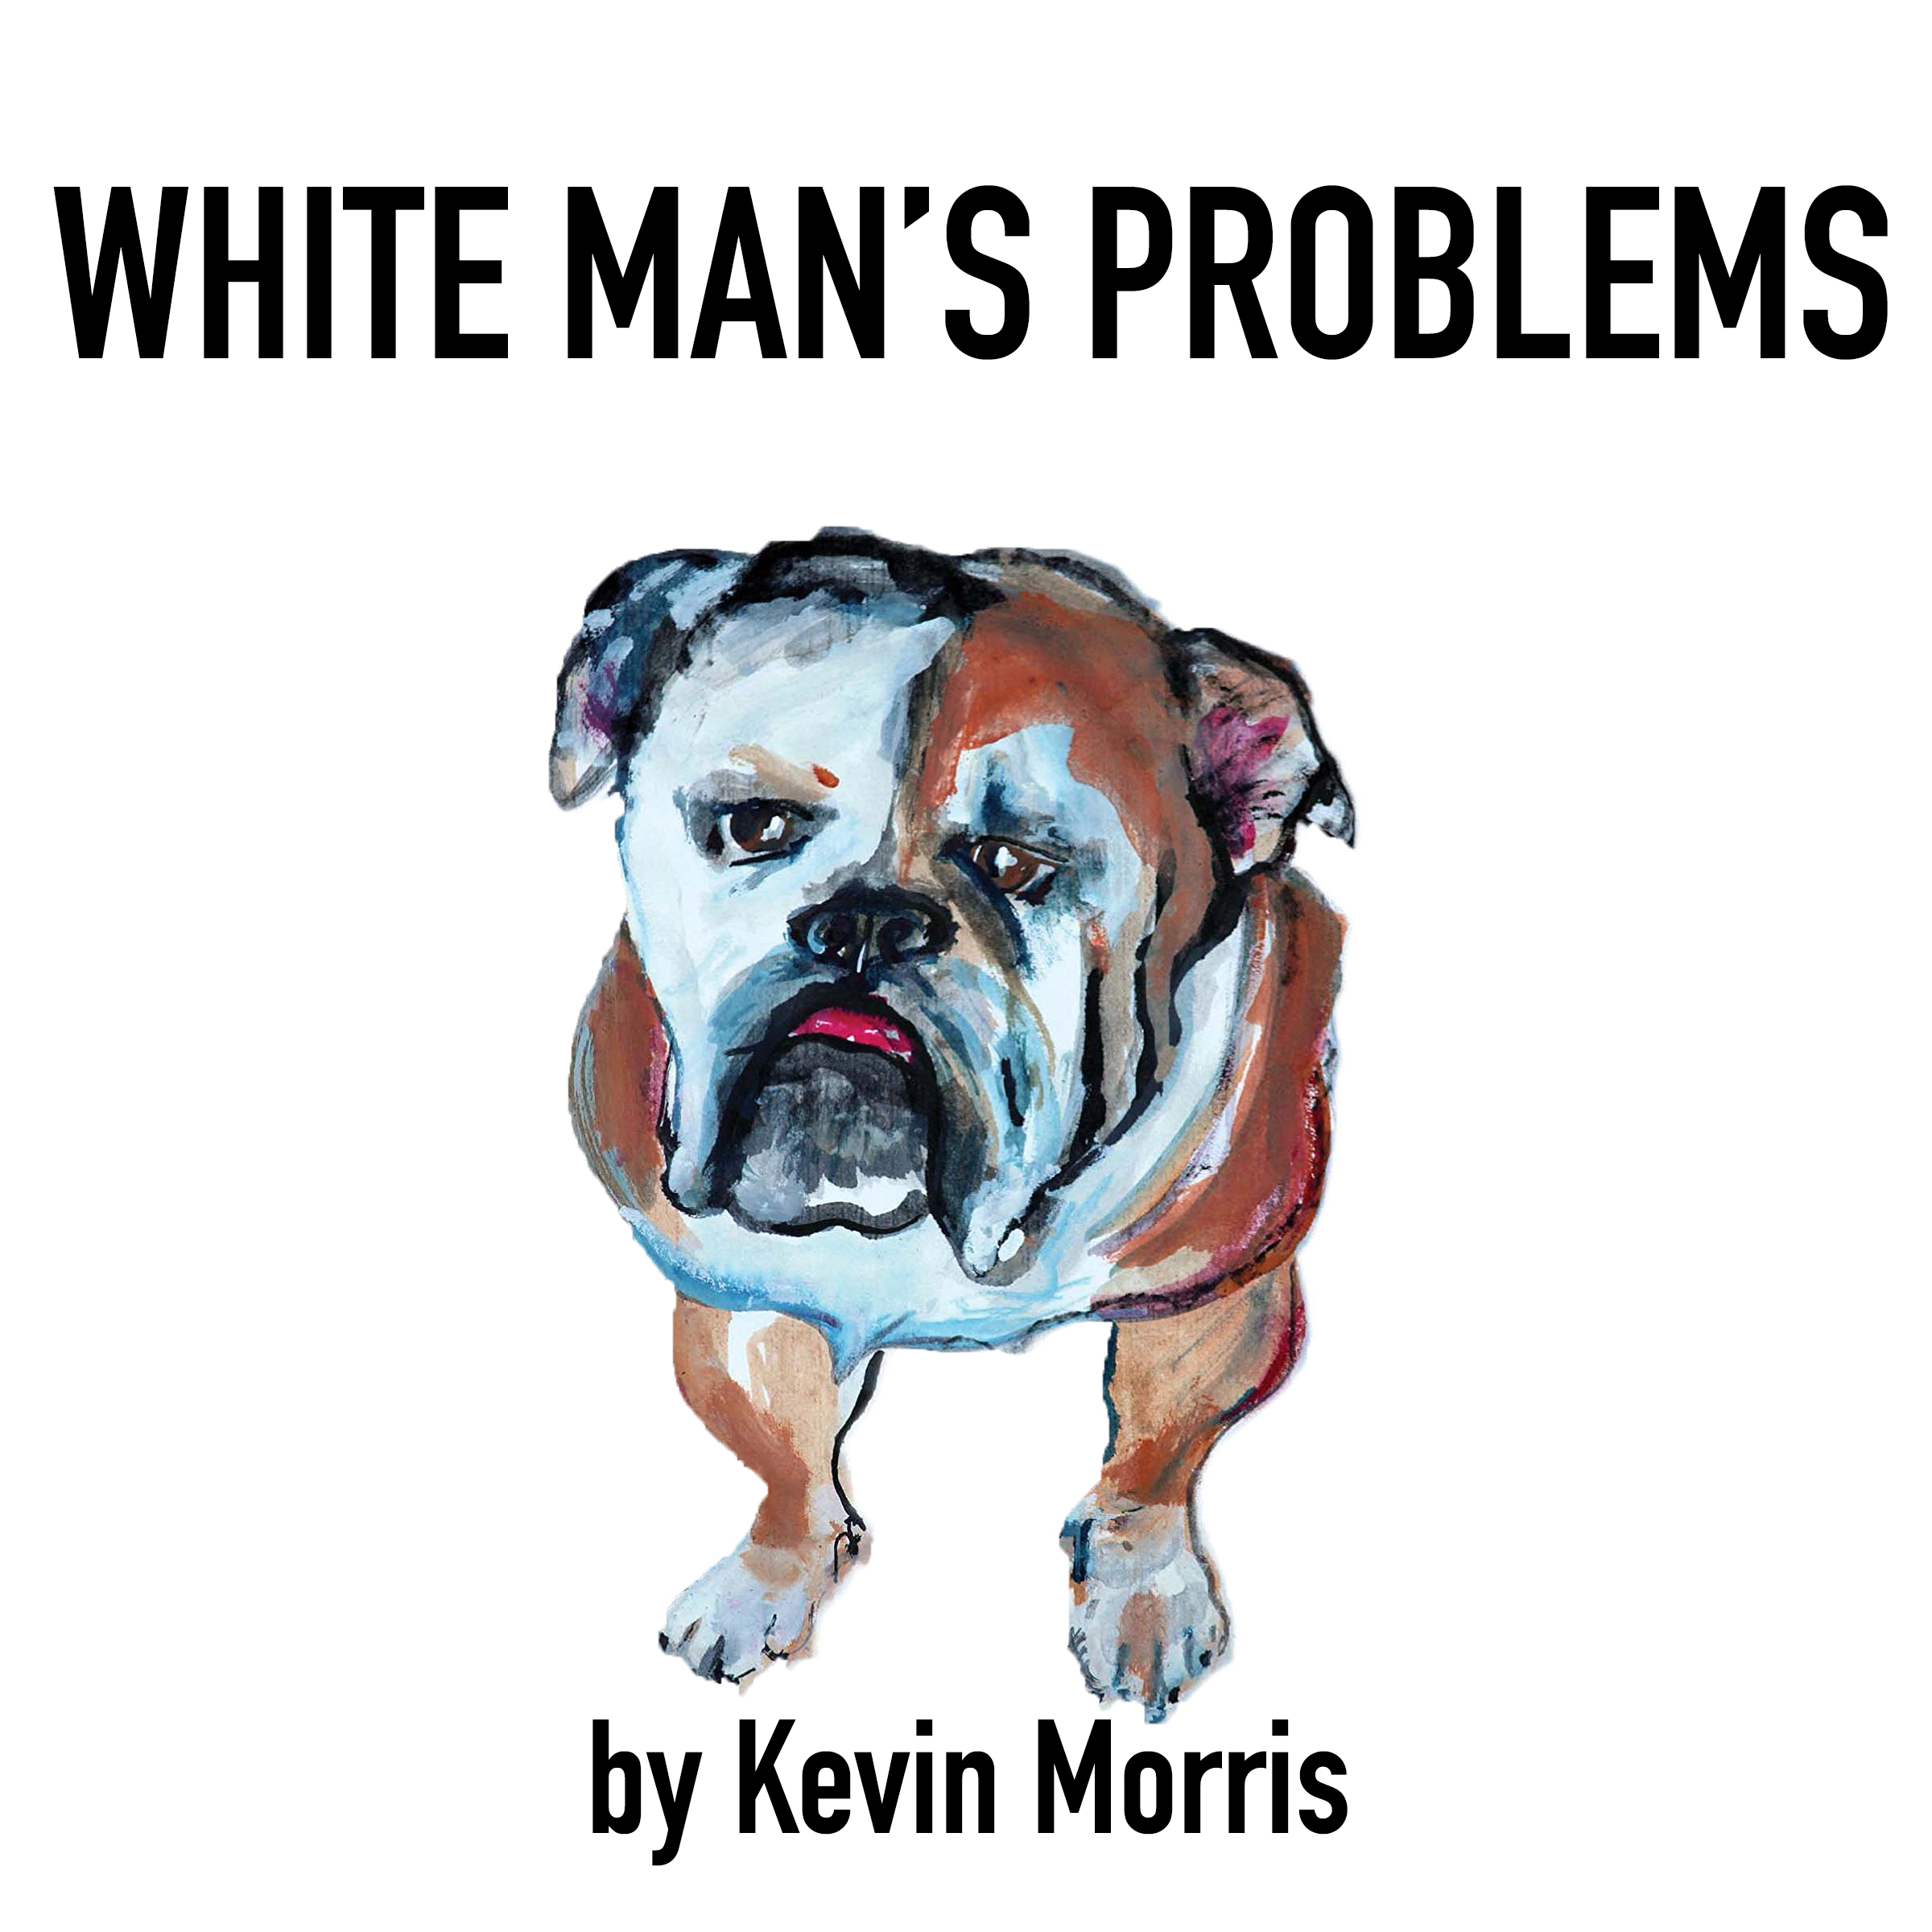 WhiteMansProblems